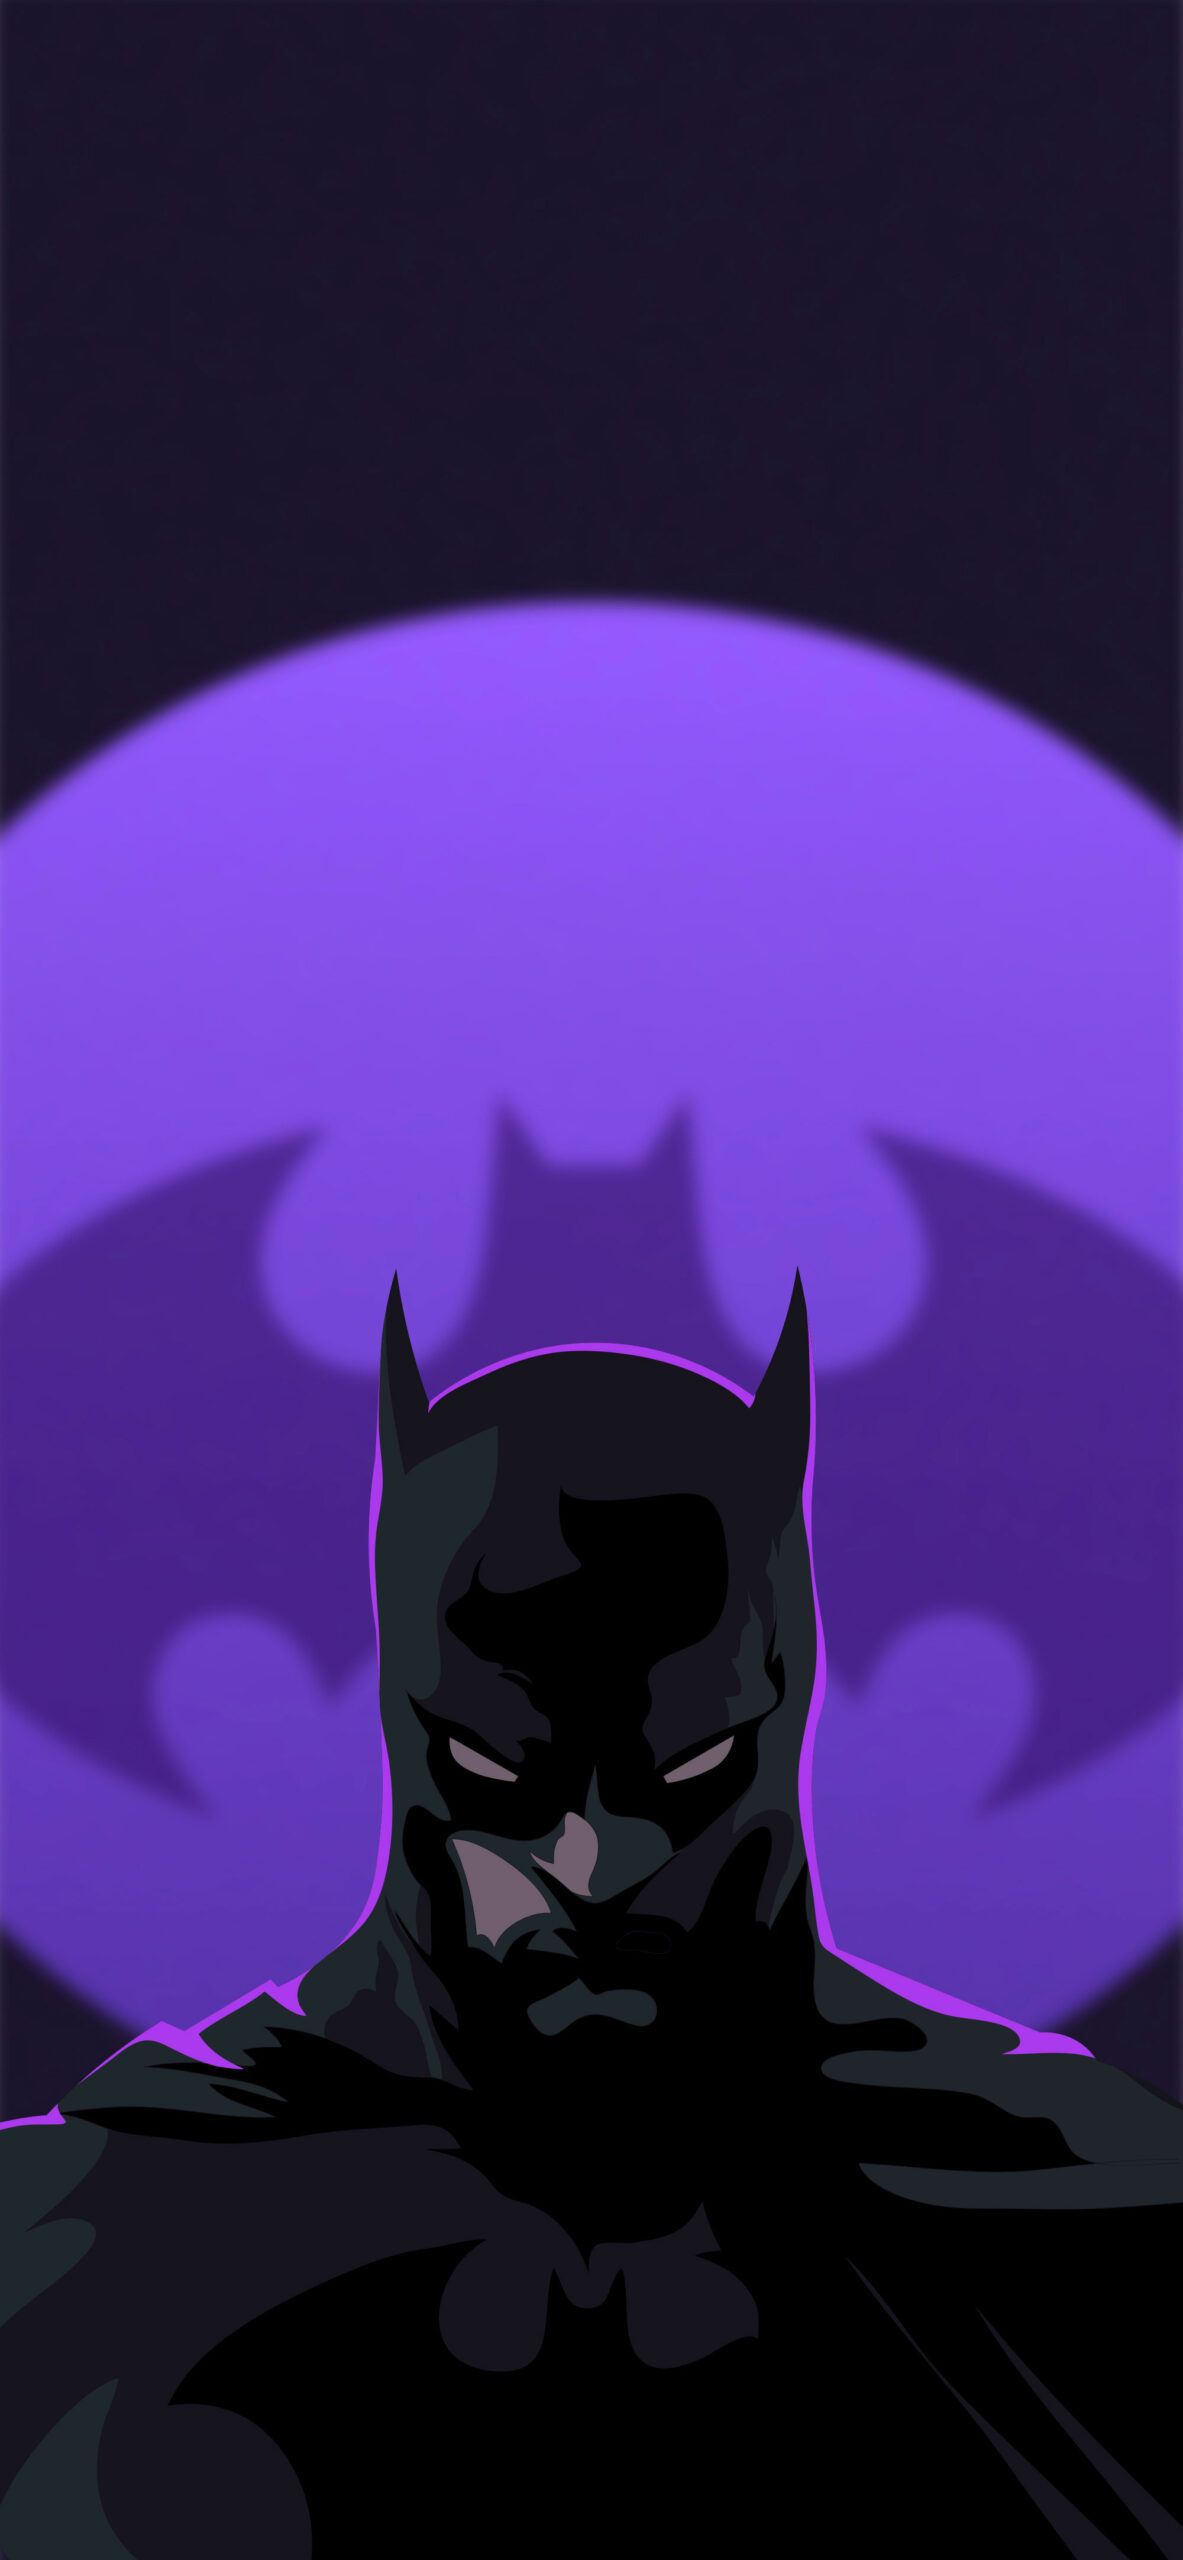  Batman Hintergrundbild 1183x2560. Batman Wallpaper for iPhone & Android